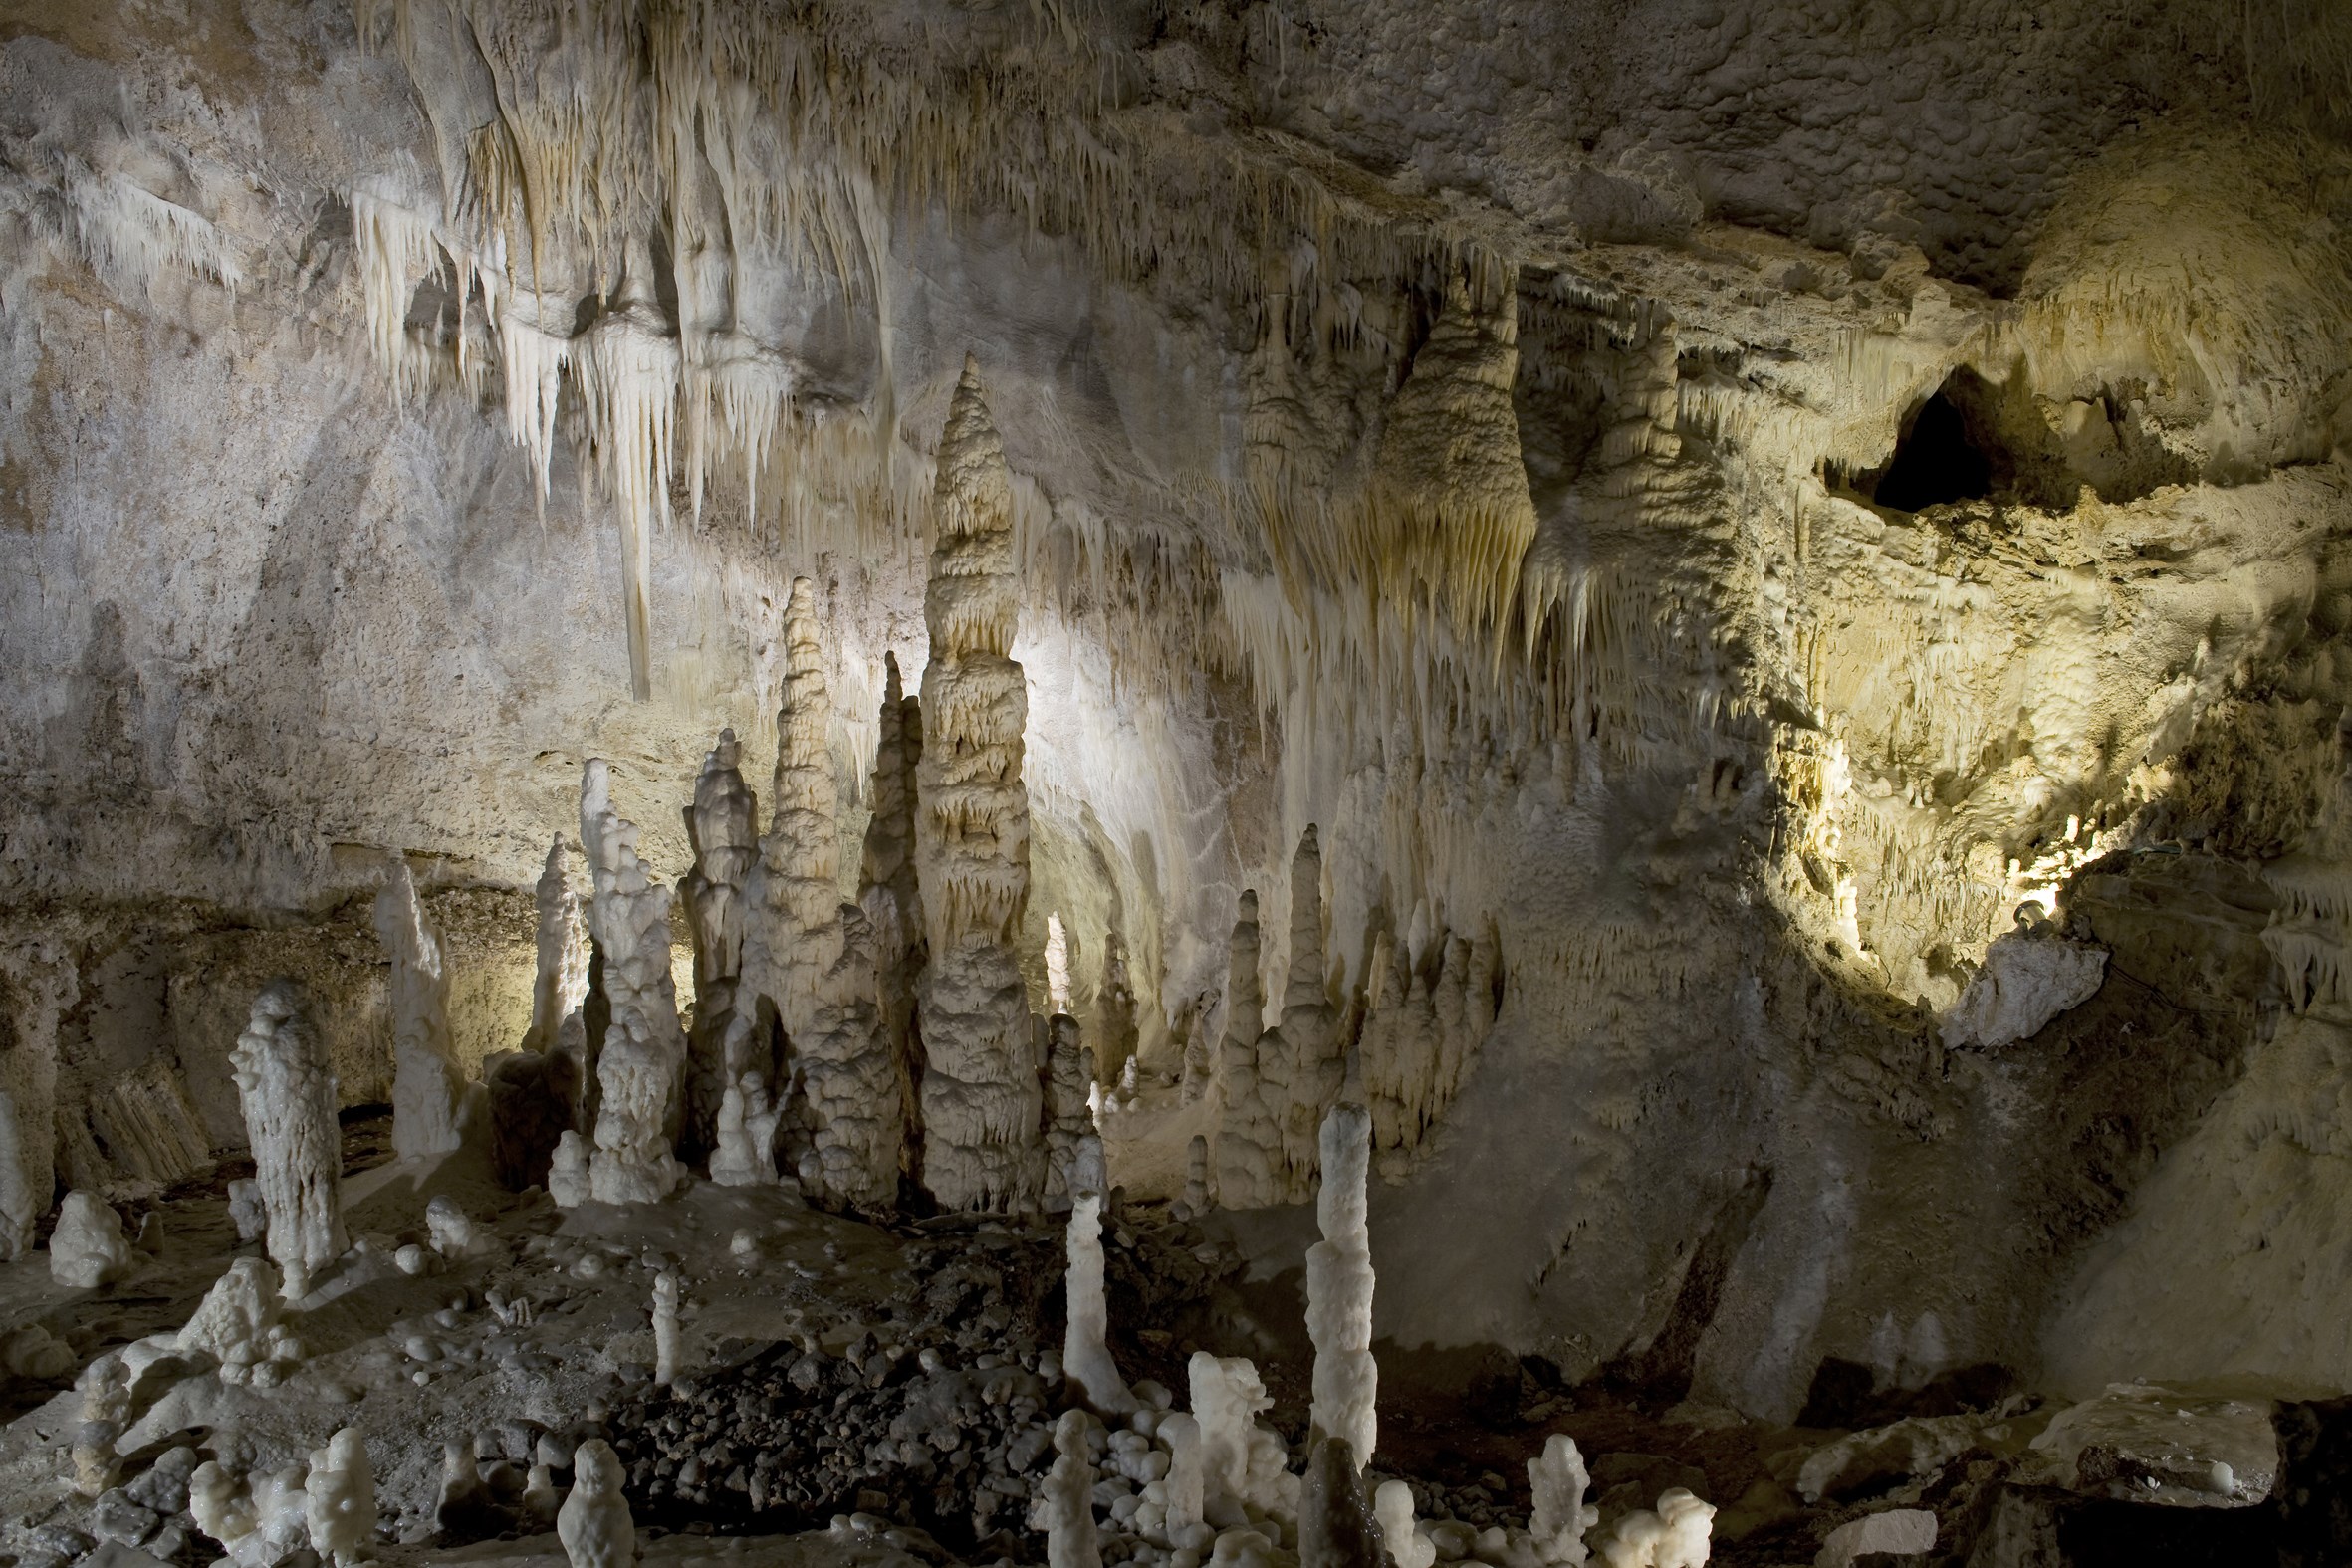 Grotte di Frasassi - I Giganti